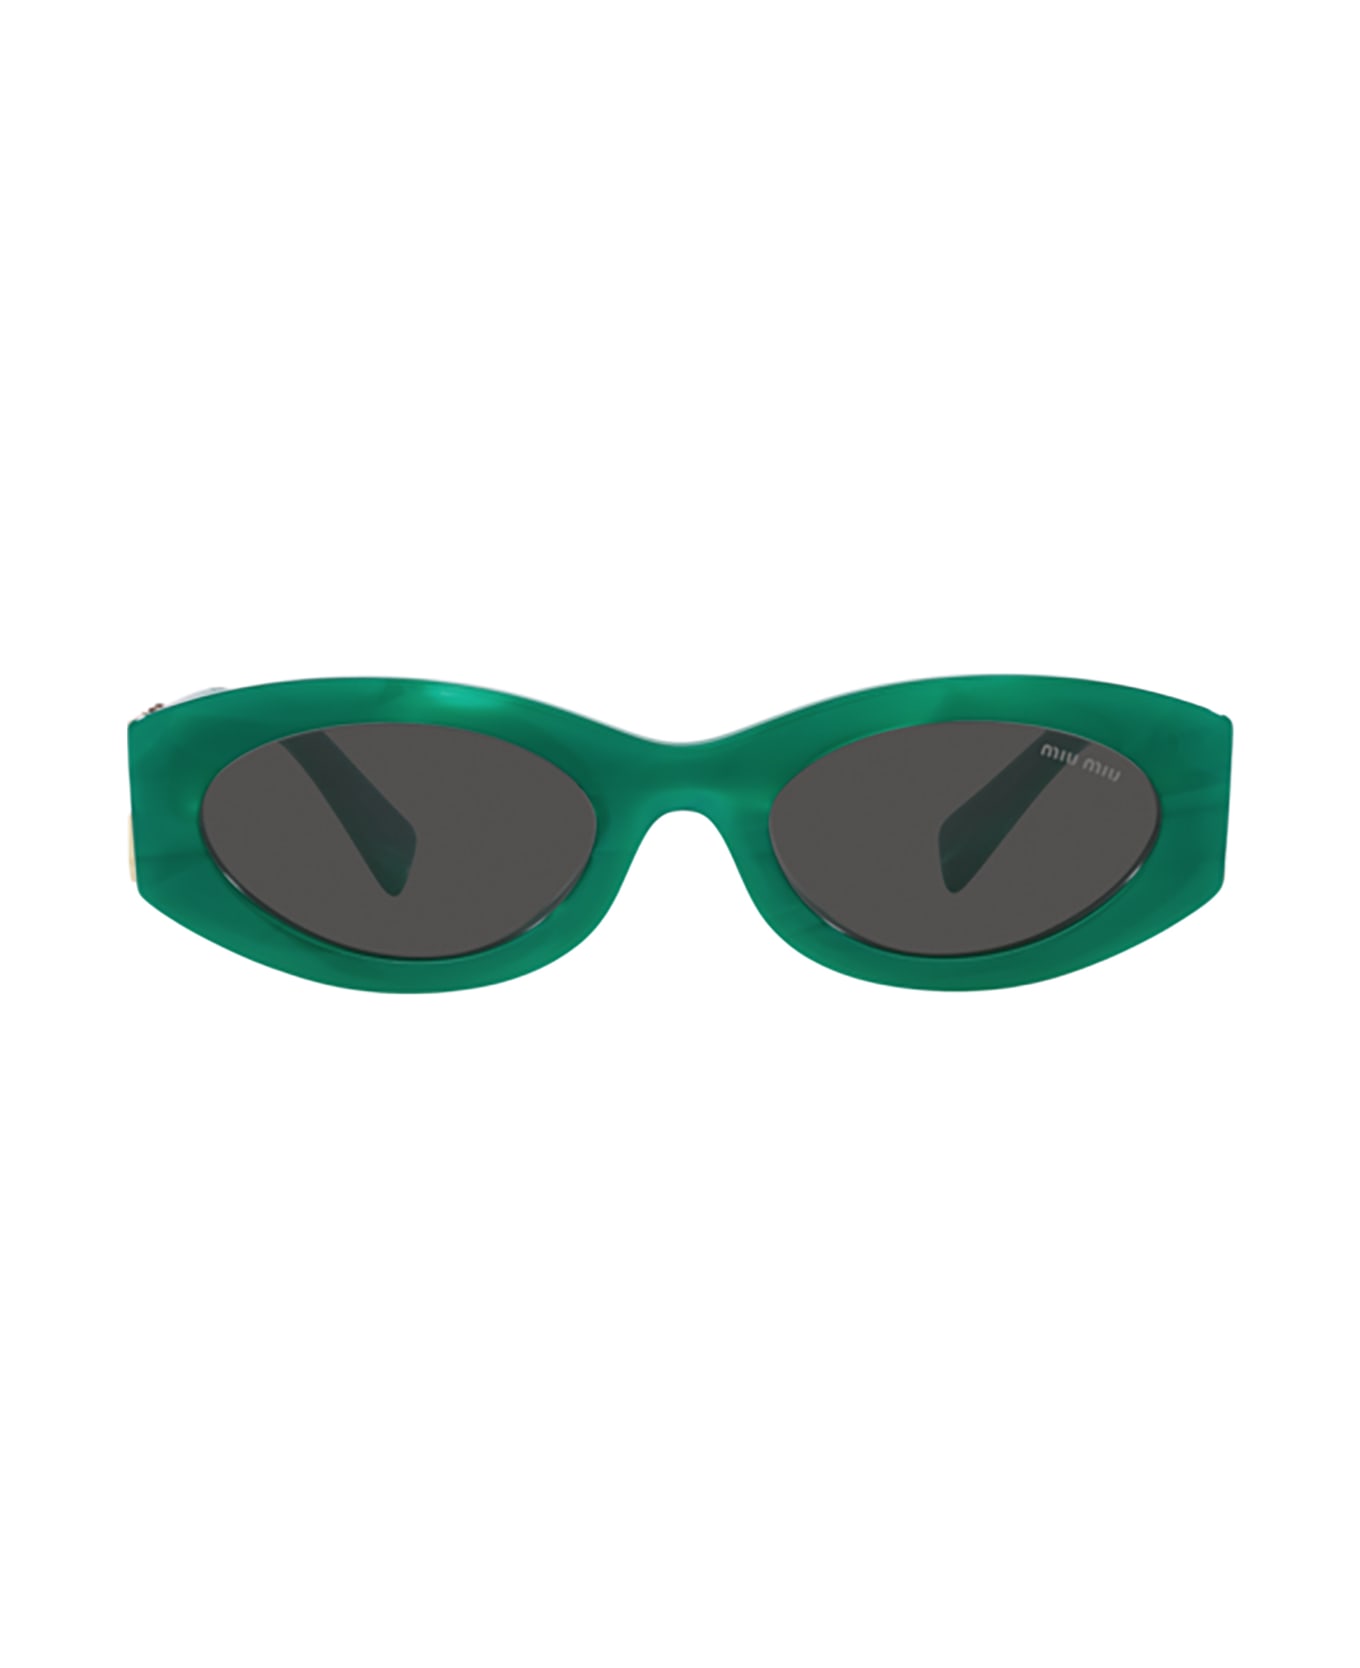 Miu Miu Eyewear Mu 11ws Green Sunglasses - Green サングラス